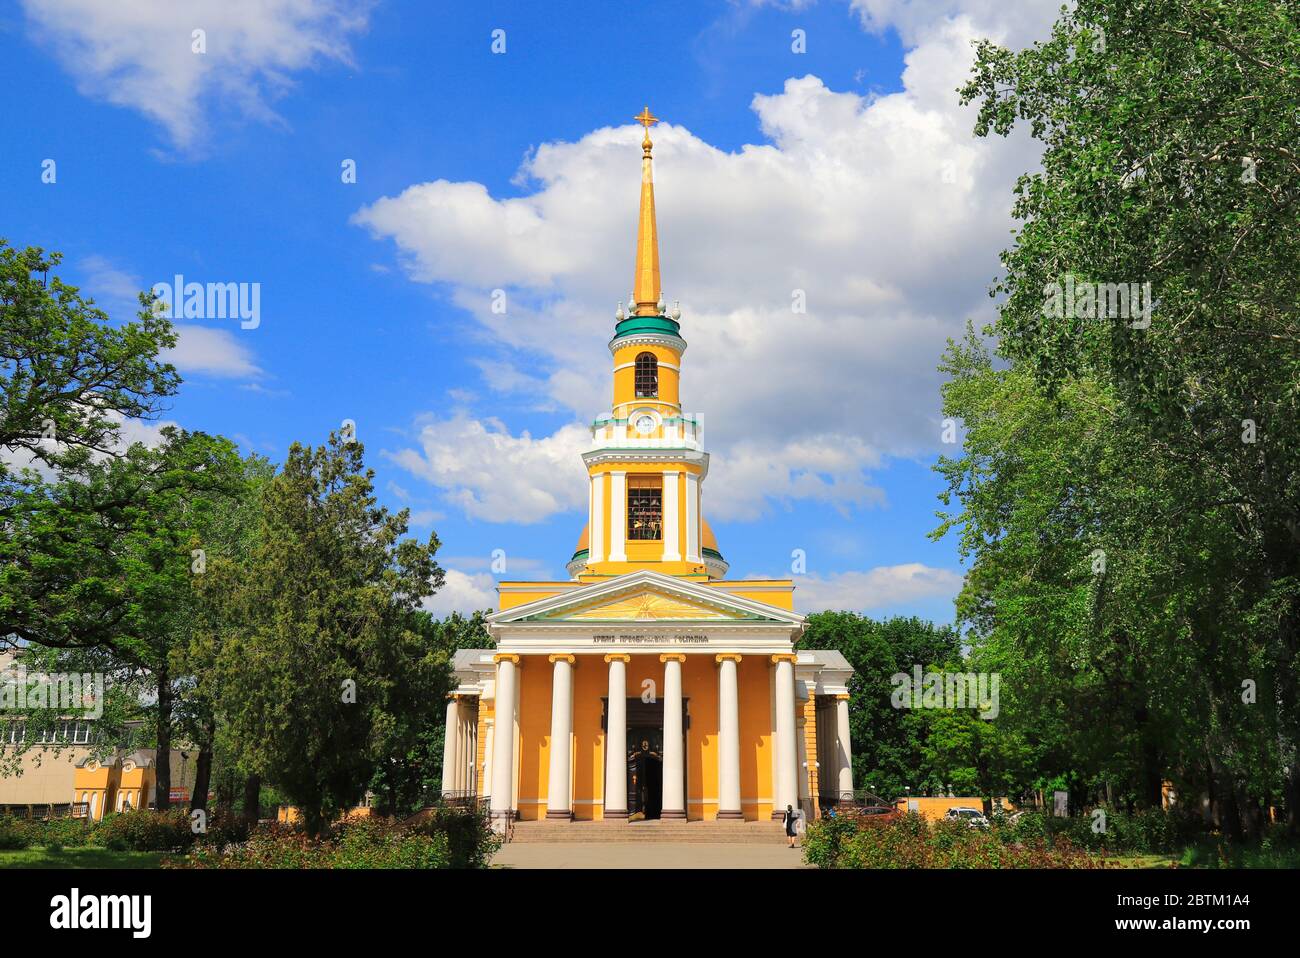 Belle église chrétienne orthodoxe avec dômes dorés, Église de la Transfiguration. Cathédrale Pierre et Paul dans la ville de Dnepr, Dnepropetrovsk Banque D'Images